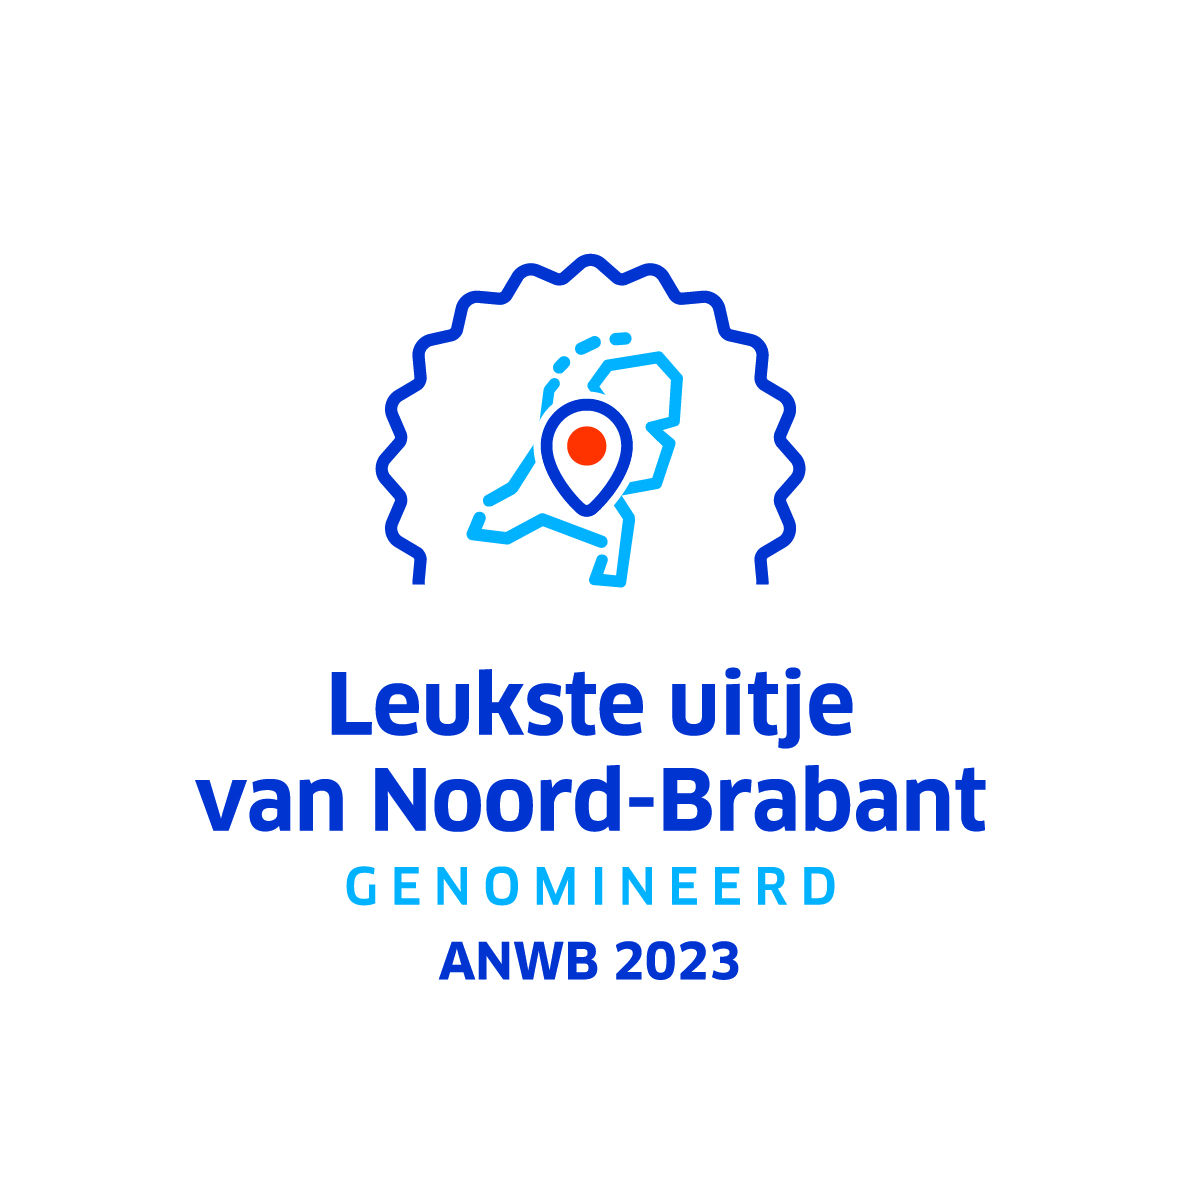 anwb_leukste_uitje_van_noord-brabant_logo_2023.jpg